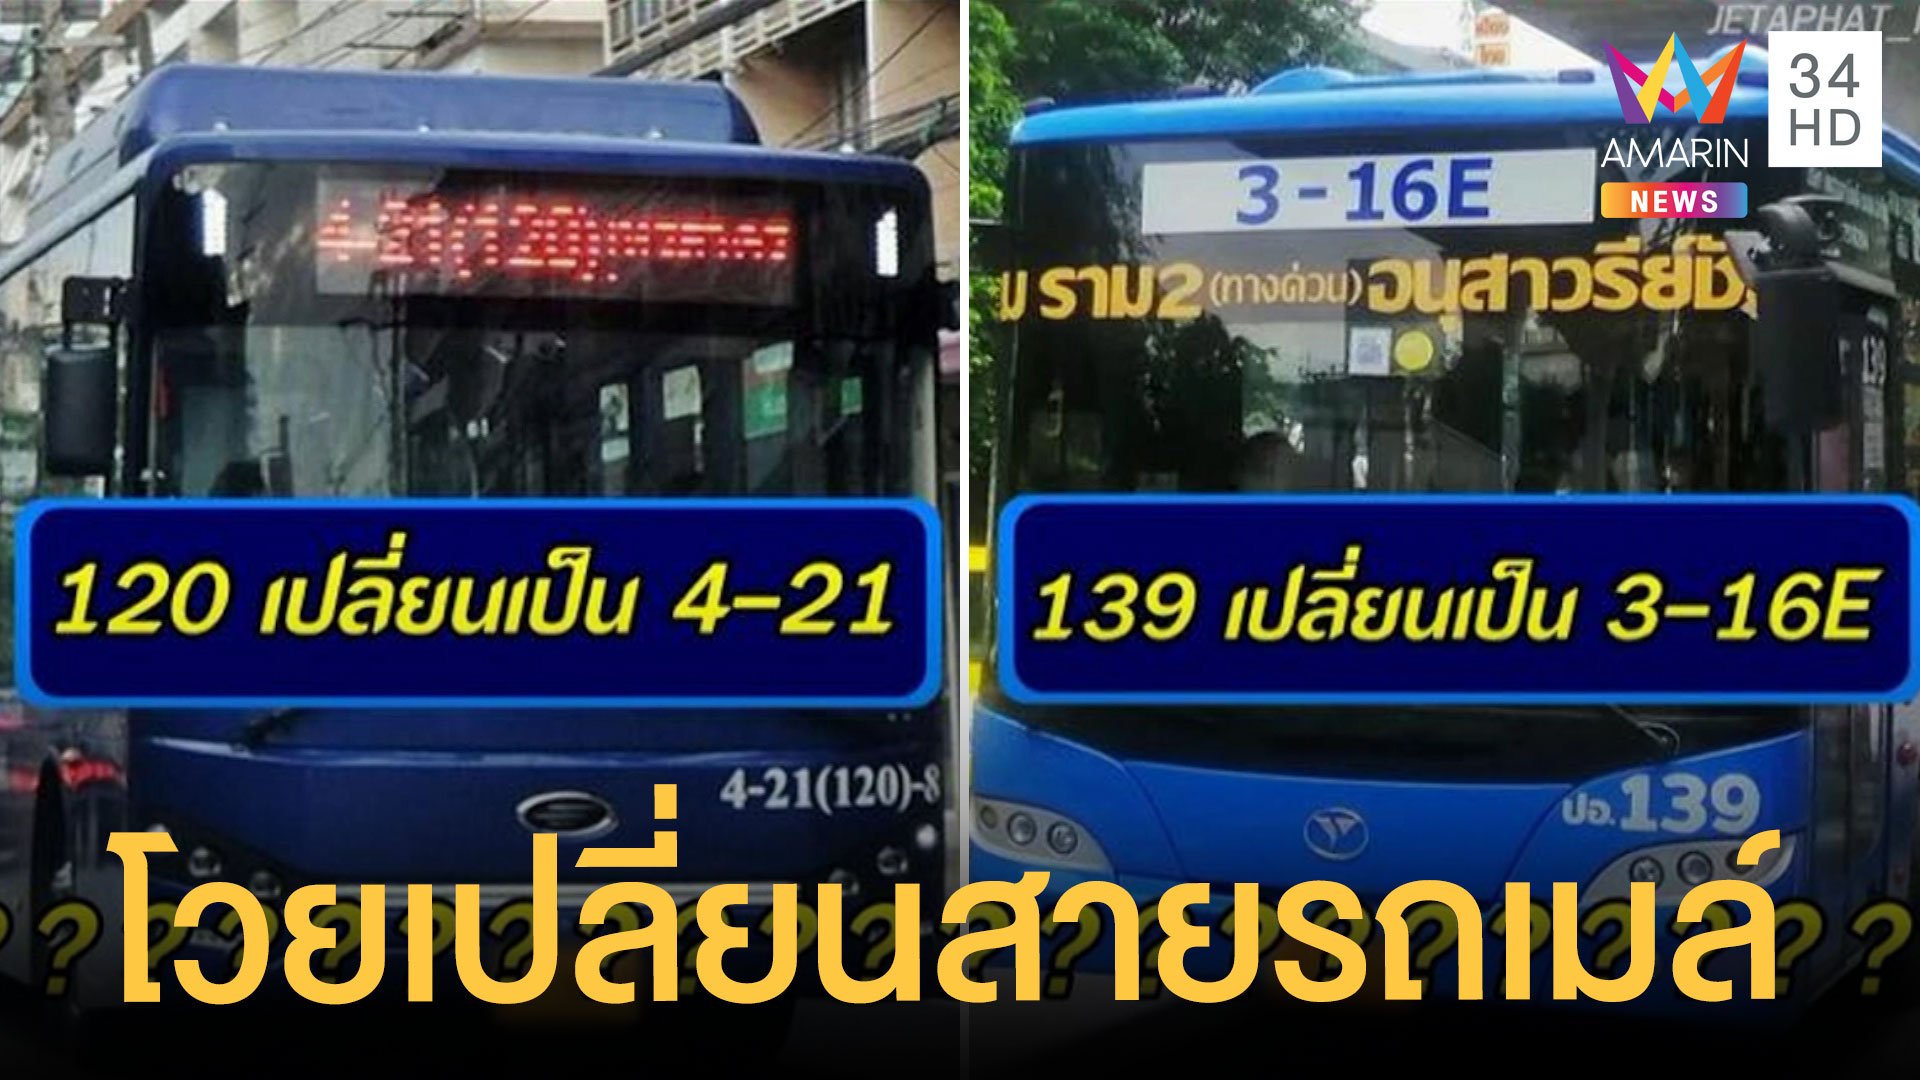 ชาวบ้านโวยเปลี่ยนเลขสายรถเมล์ทำชีวิตปั่นป่วน | ข่าวเที่ยงอมรินทร์ | 21 มิ.ย. 65 | AMARIN TVHD34